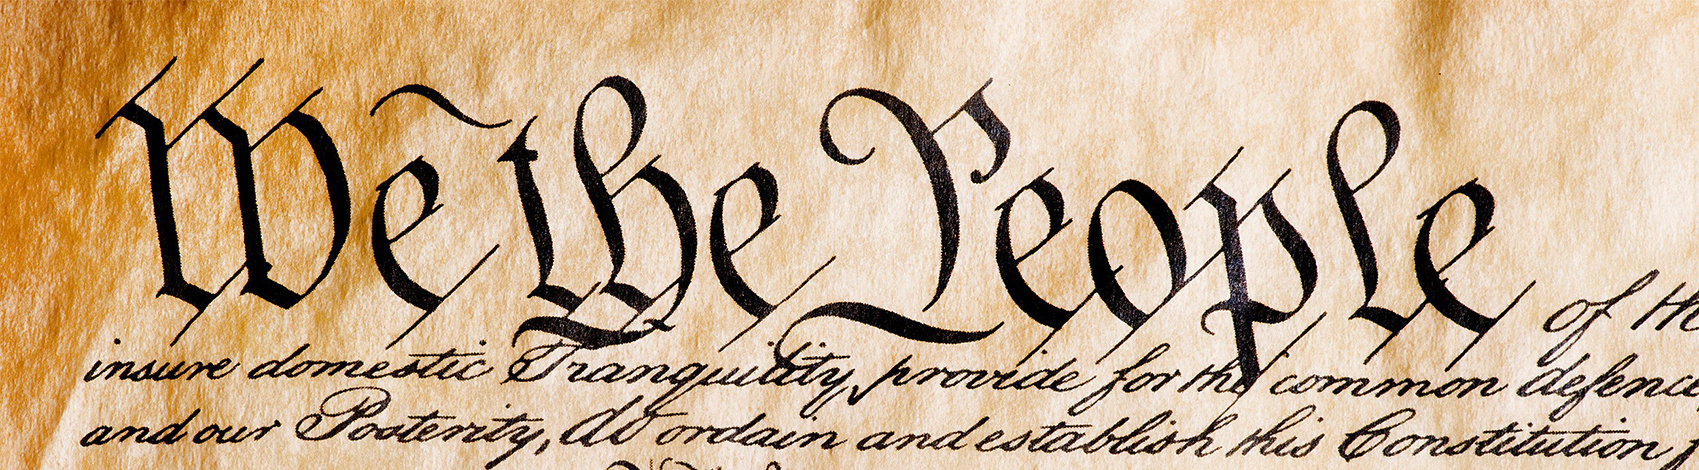 Constitution image